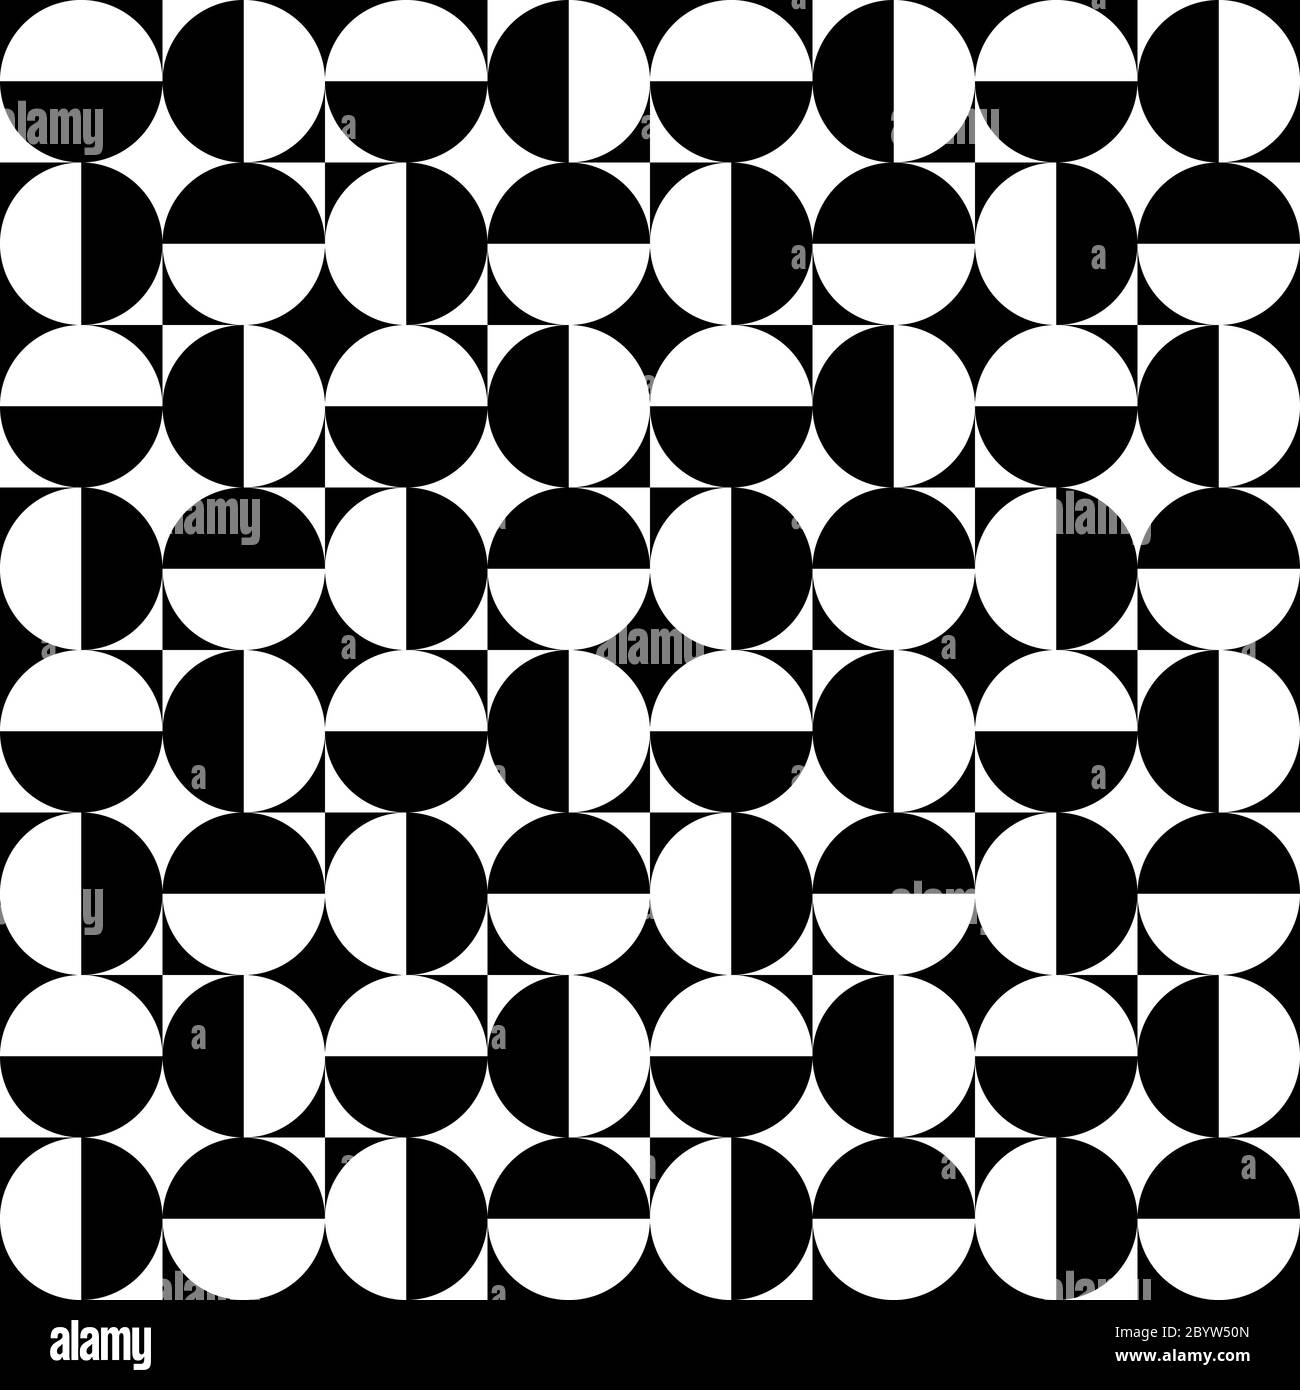 Geometrische Zeichen - Kreise und Quadrate. Kontrastreiche Retro-Nahtloses Muster in Schwarz und Weiß. Vektorgrafik. Stock Vektor